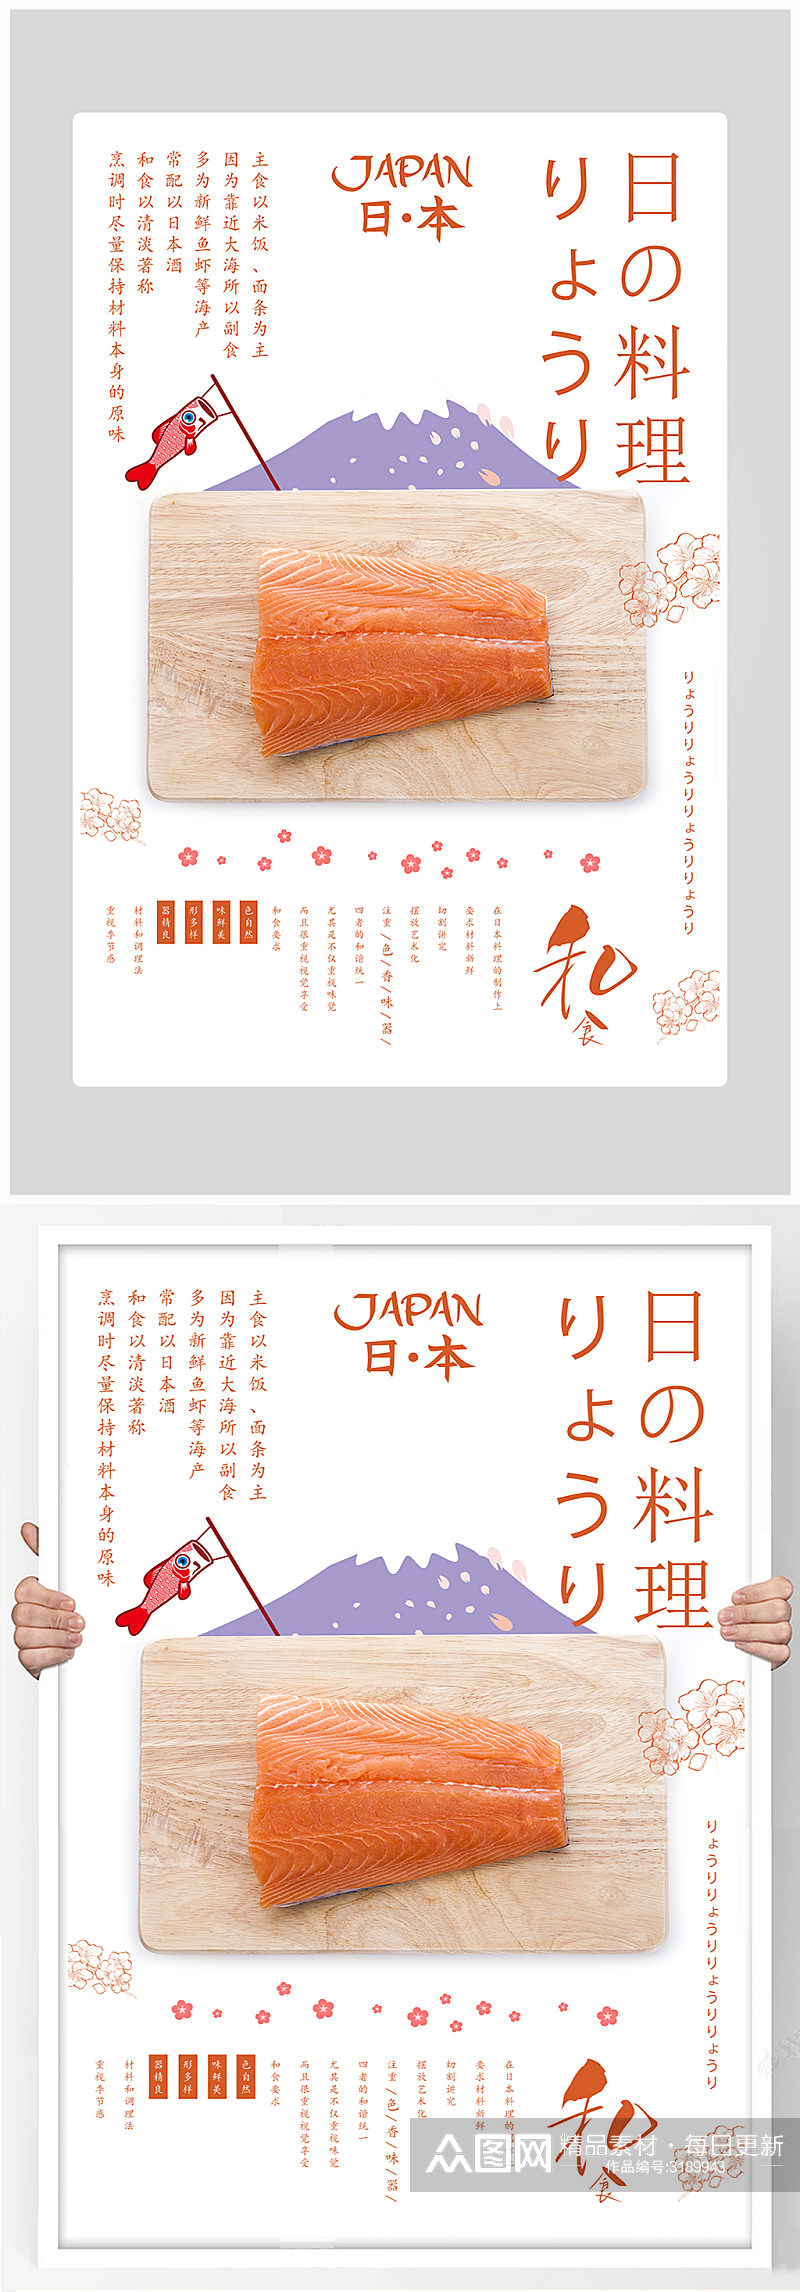 唯美简约日式料理美食海报设计素材